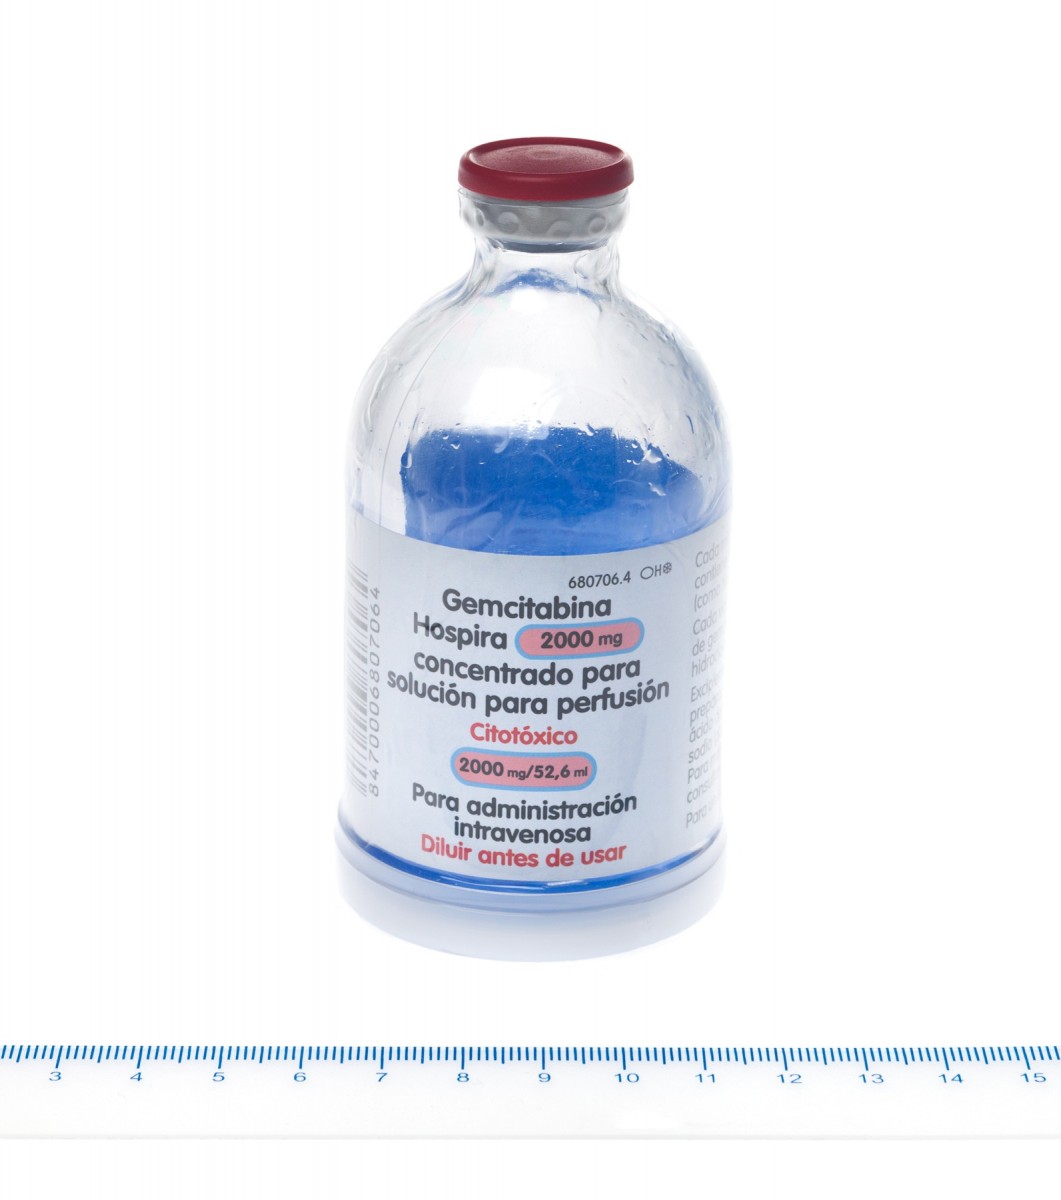 GEMCITABINA HOSPIRA 2000 mg CONCENTRADO PARA SOLUCION PARA PERFUSION , 1 vial de 52,6 ml fotografía de la forma farmacéutica.